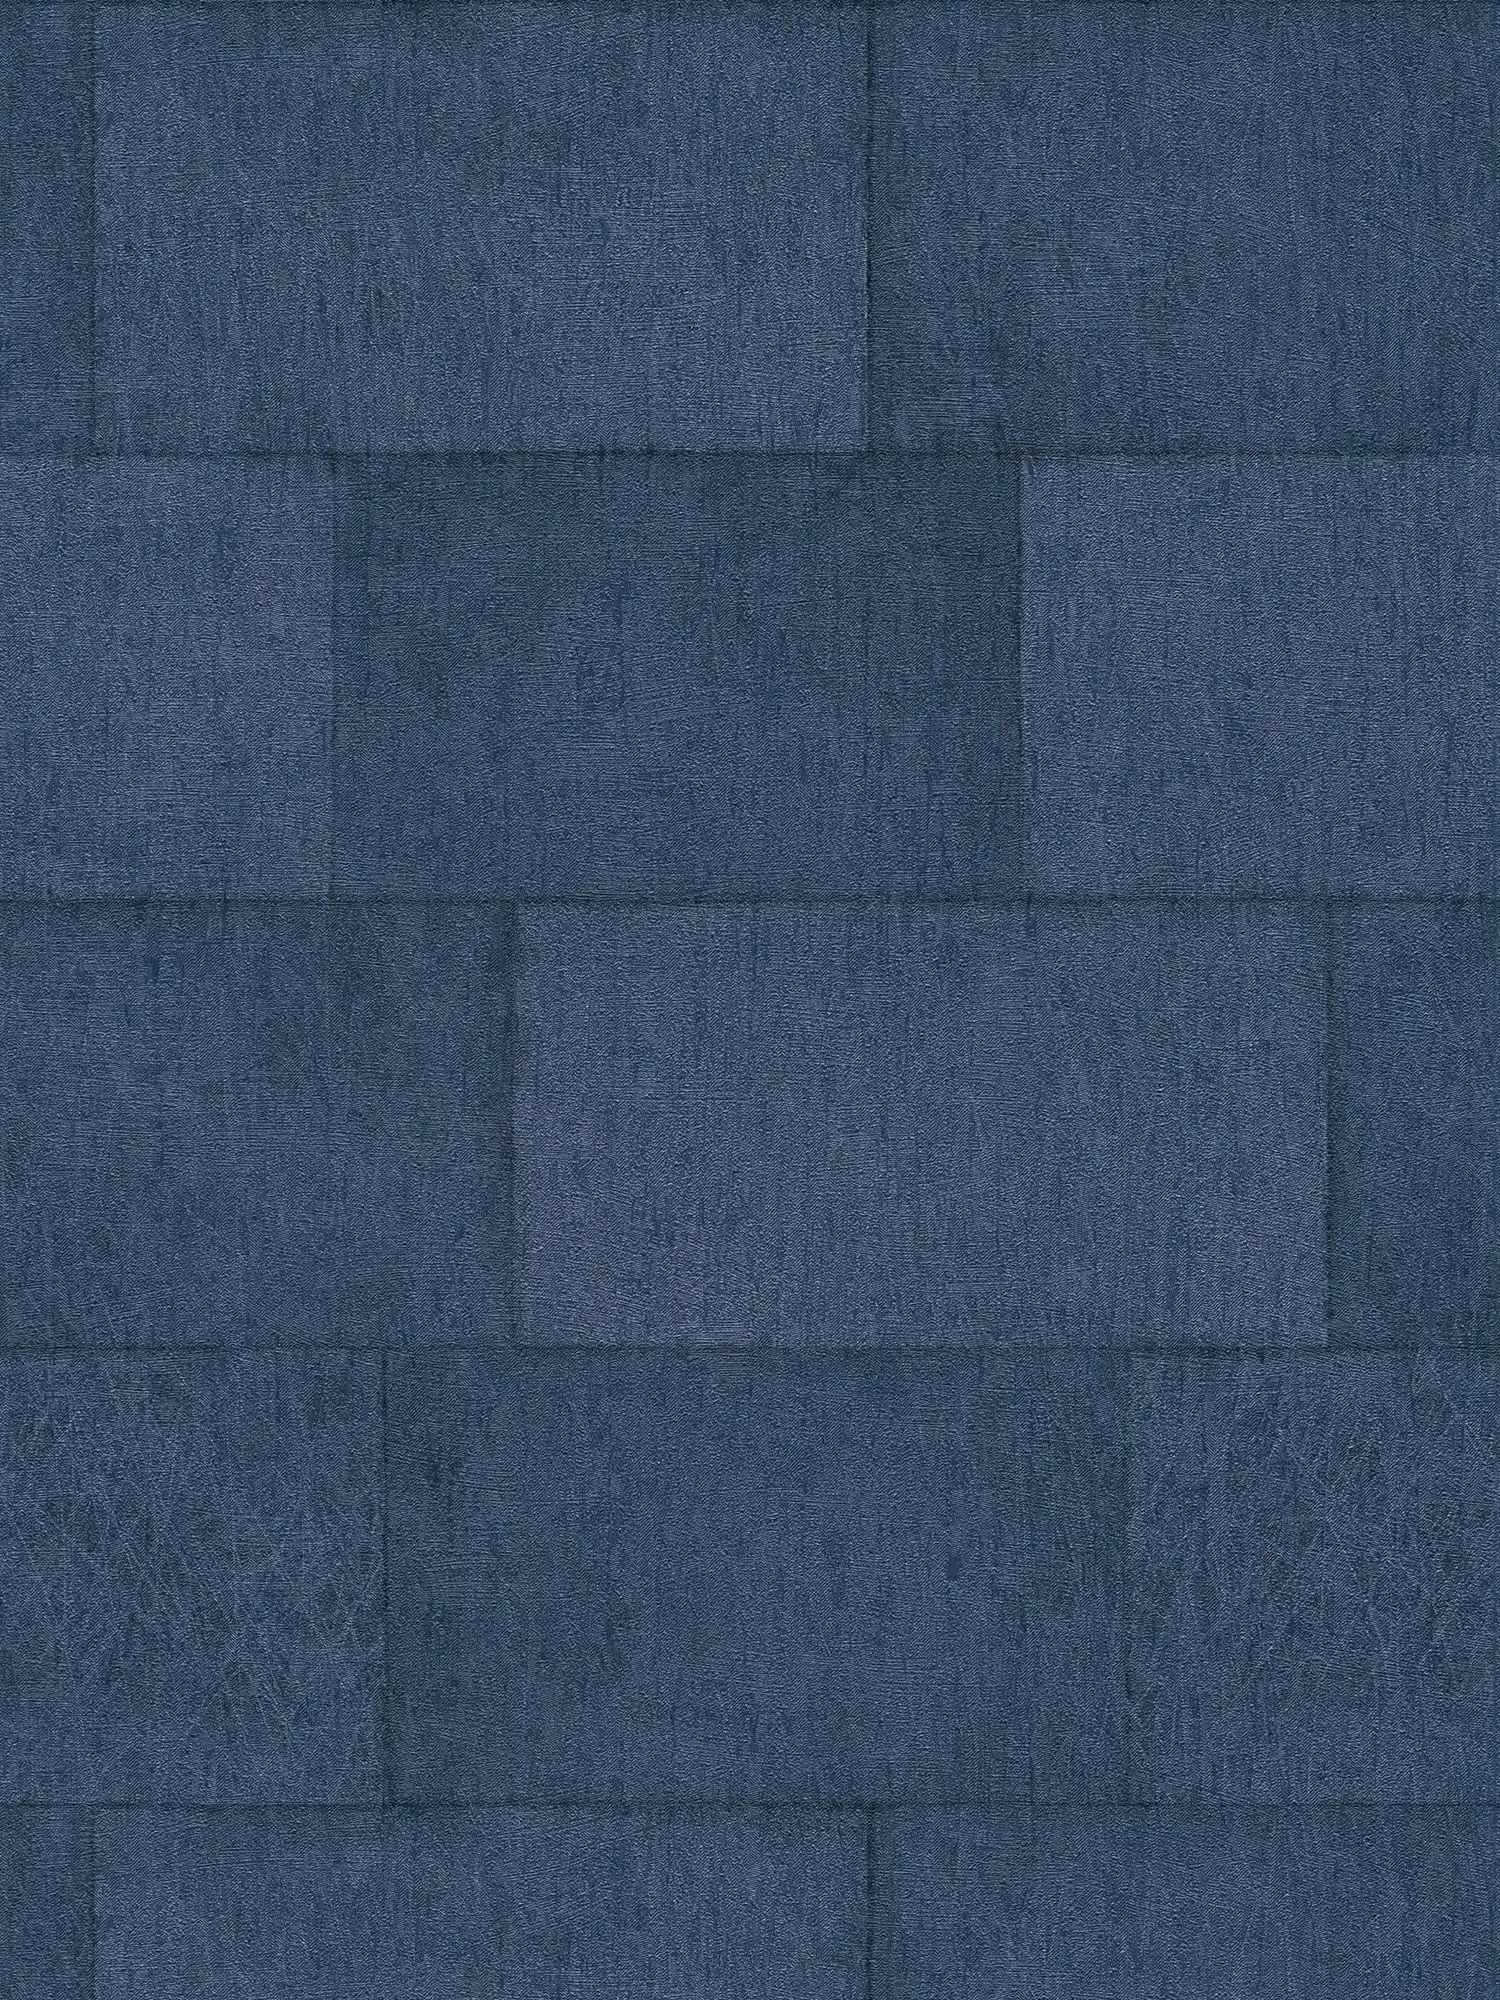 Stein Tapete Dunkelblau mit Glanzeffekt – Blau
